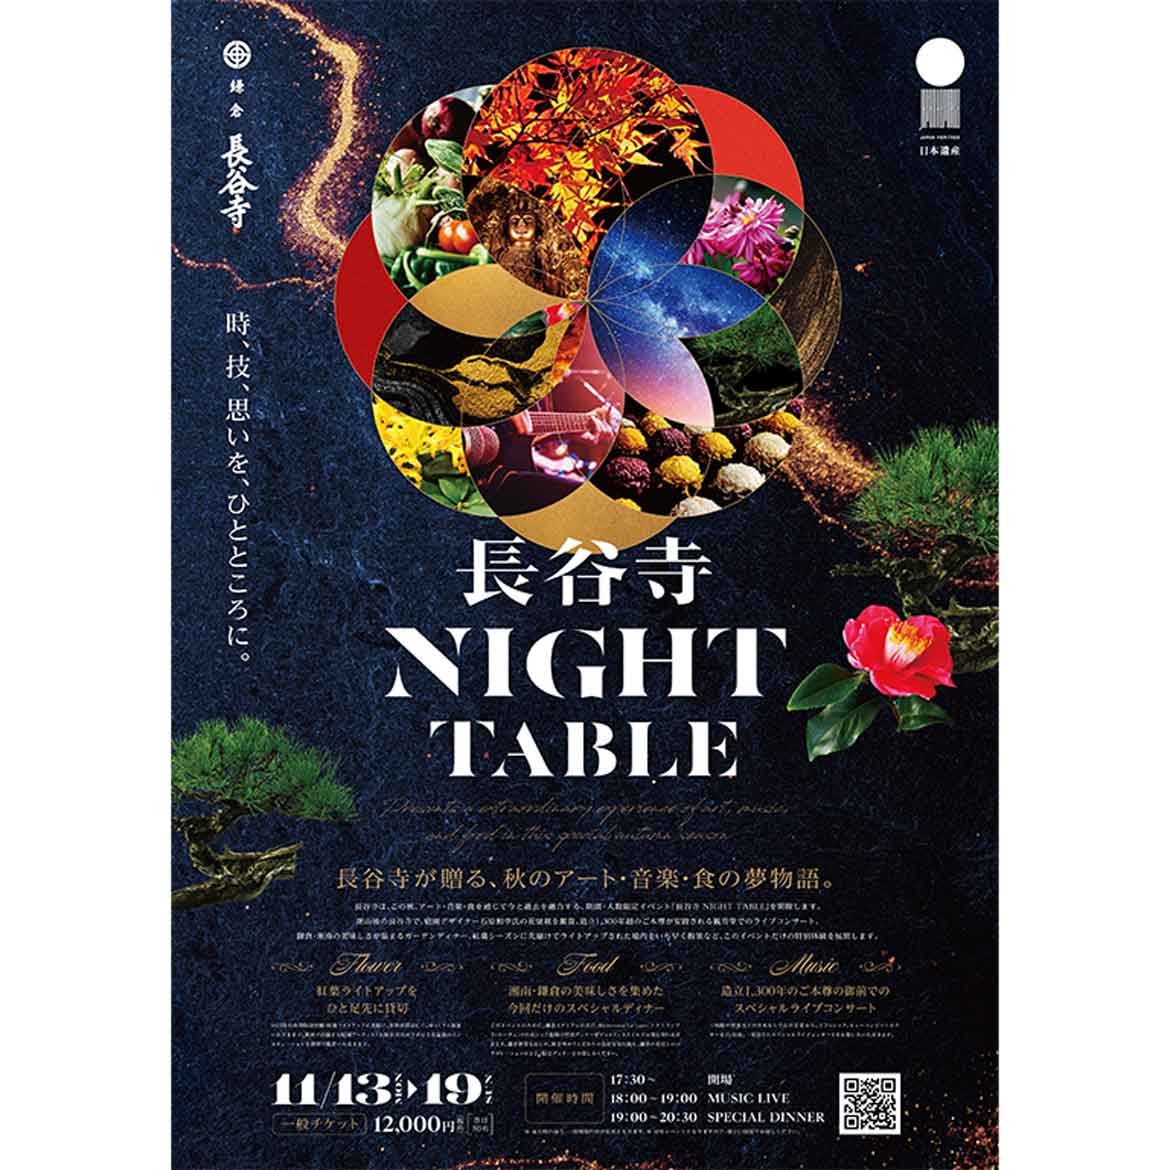 鎌倉・長谷寺、期間・人数限定で秋のアート・音楽・食の体験型イベント「長谷寺NIGHT TABLE」開催